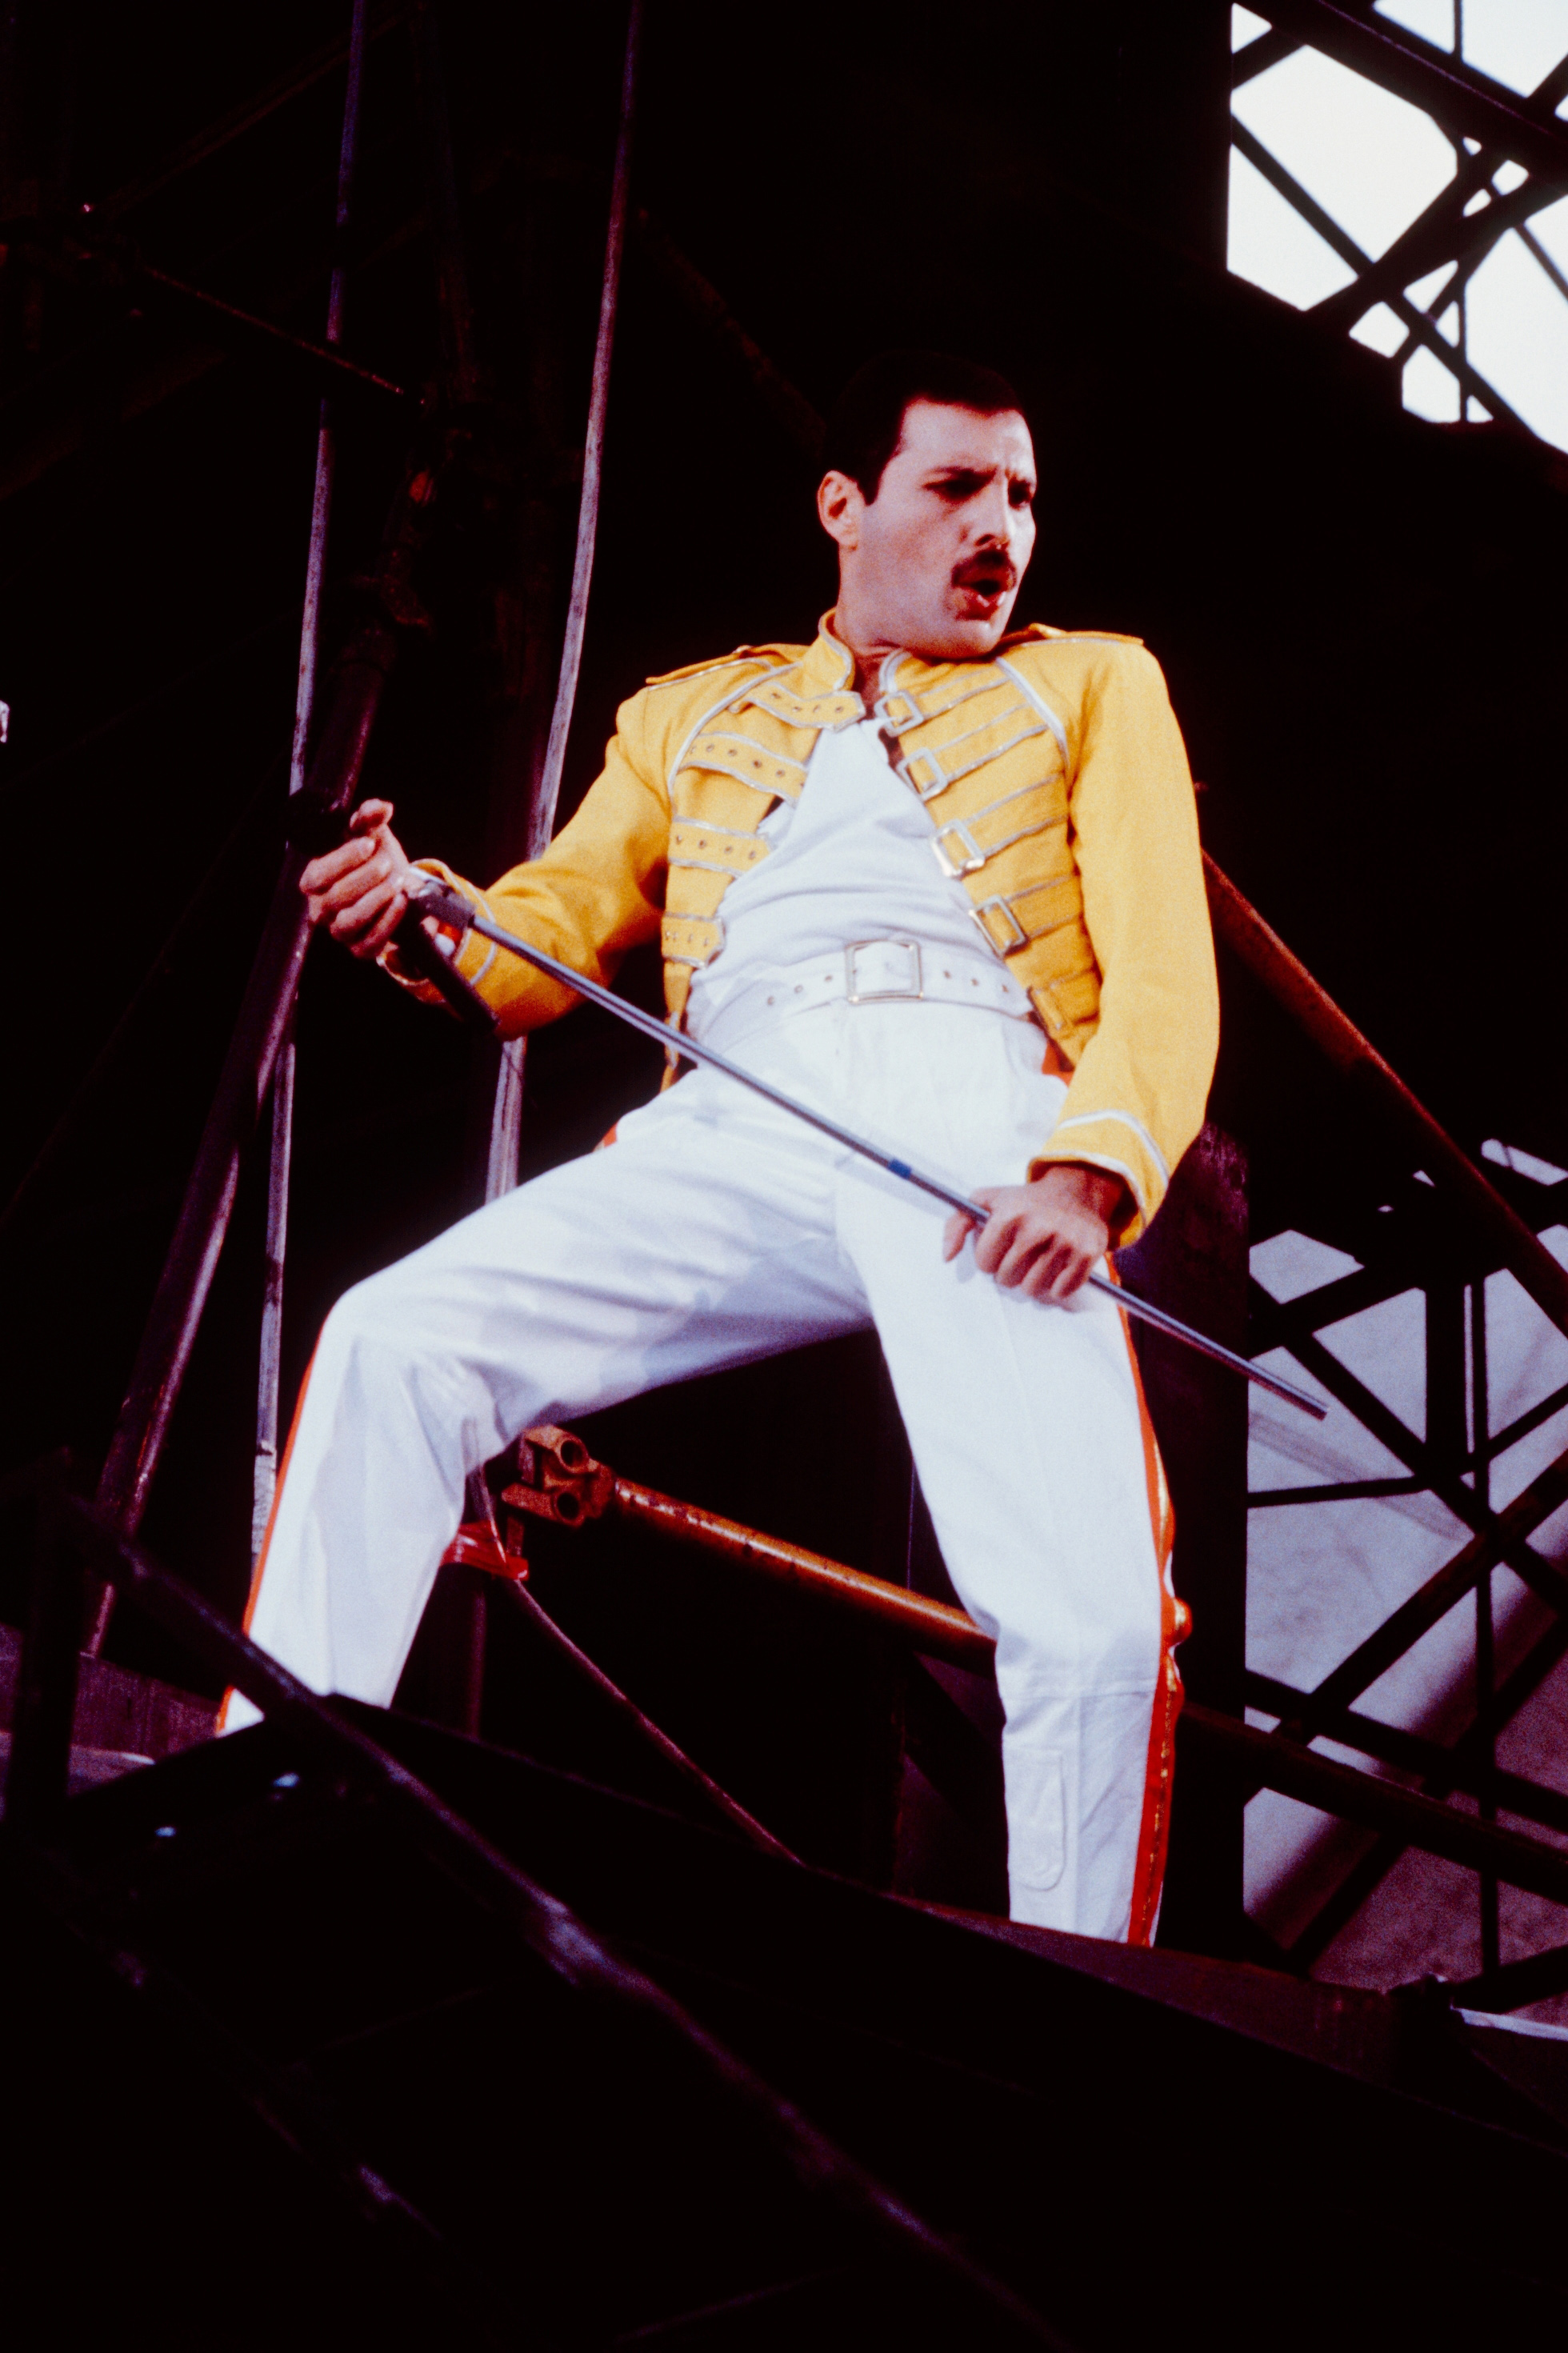 Freddie Mercury von Queen war bekannt für seinen unglaublichen Stimmumfang und seine extravagante Bühnenpräsenz